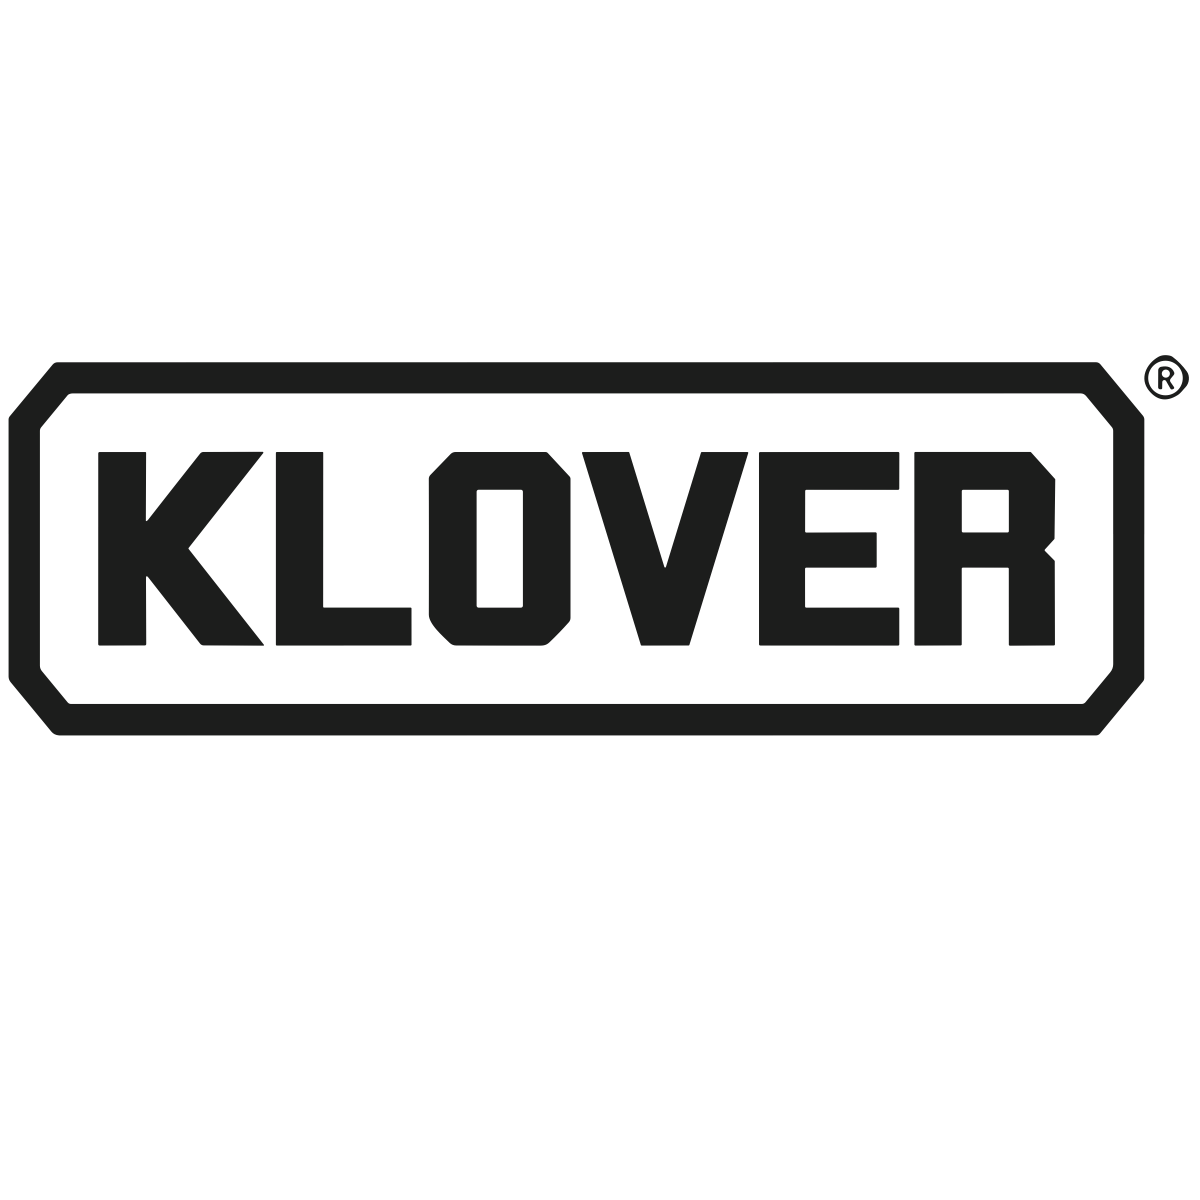 Klover logo